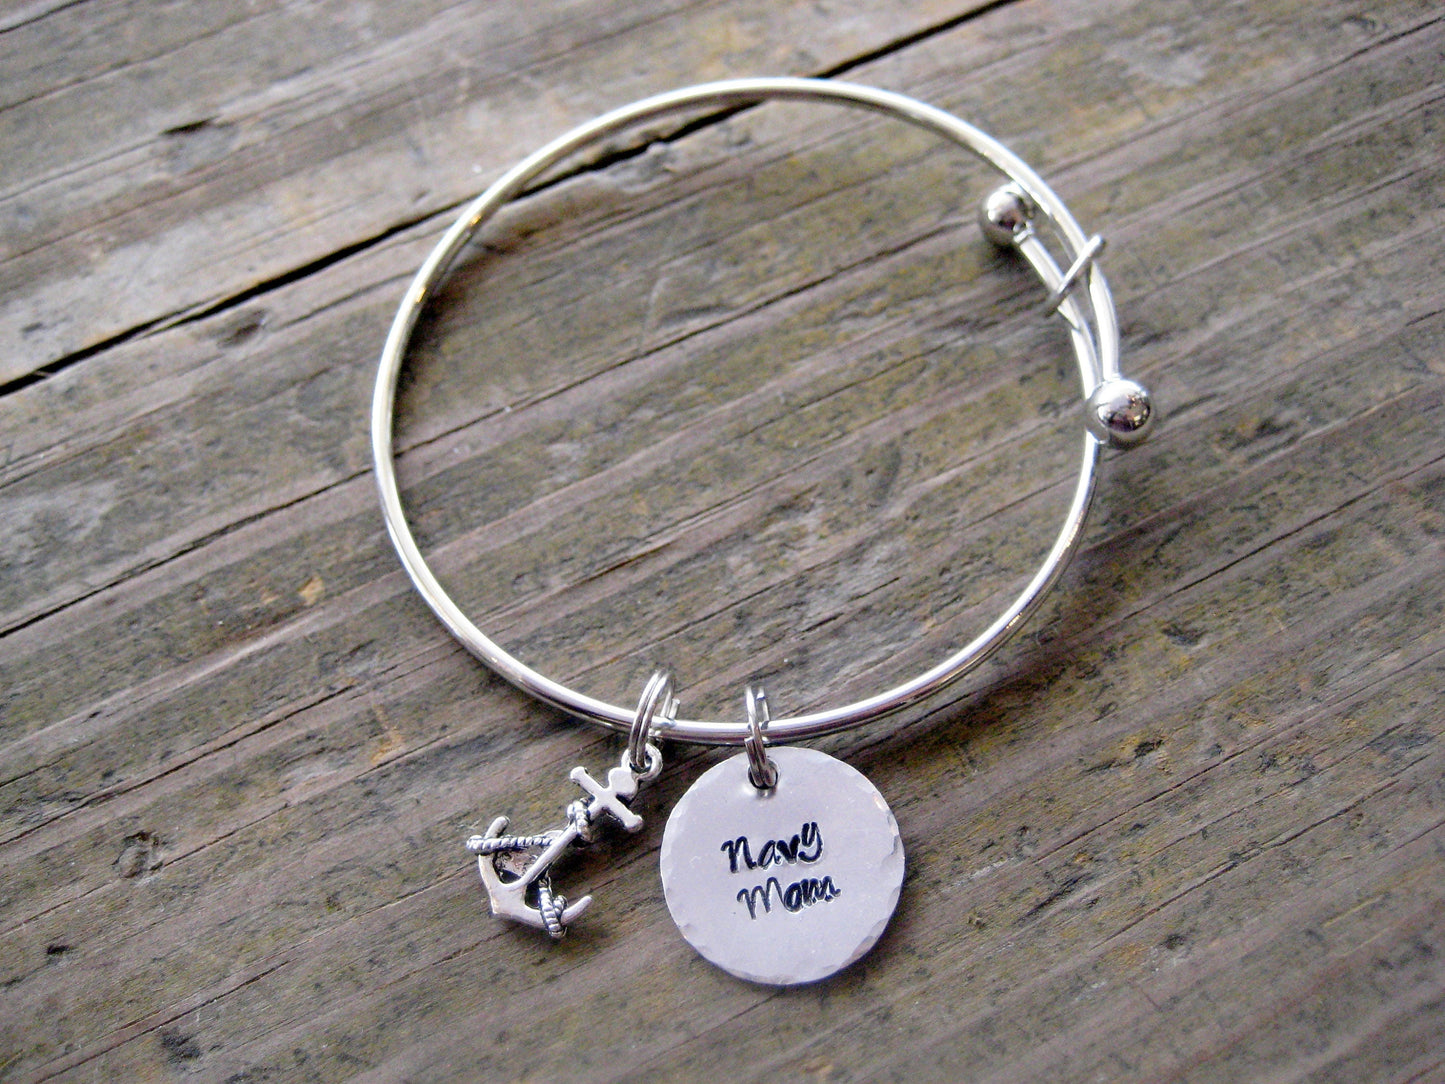 NAVY MOM Bracelet- Navy charm bracelet, Navy Gift, Navy jewelry, Mother's Day Gift, Navy Mom Jewelry, Navy Mom Mother's Day Gift